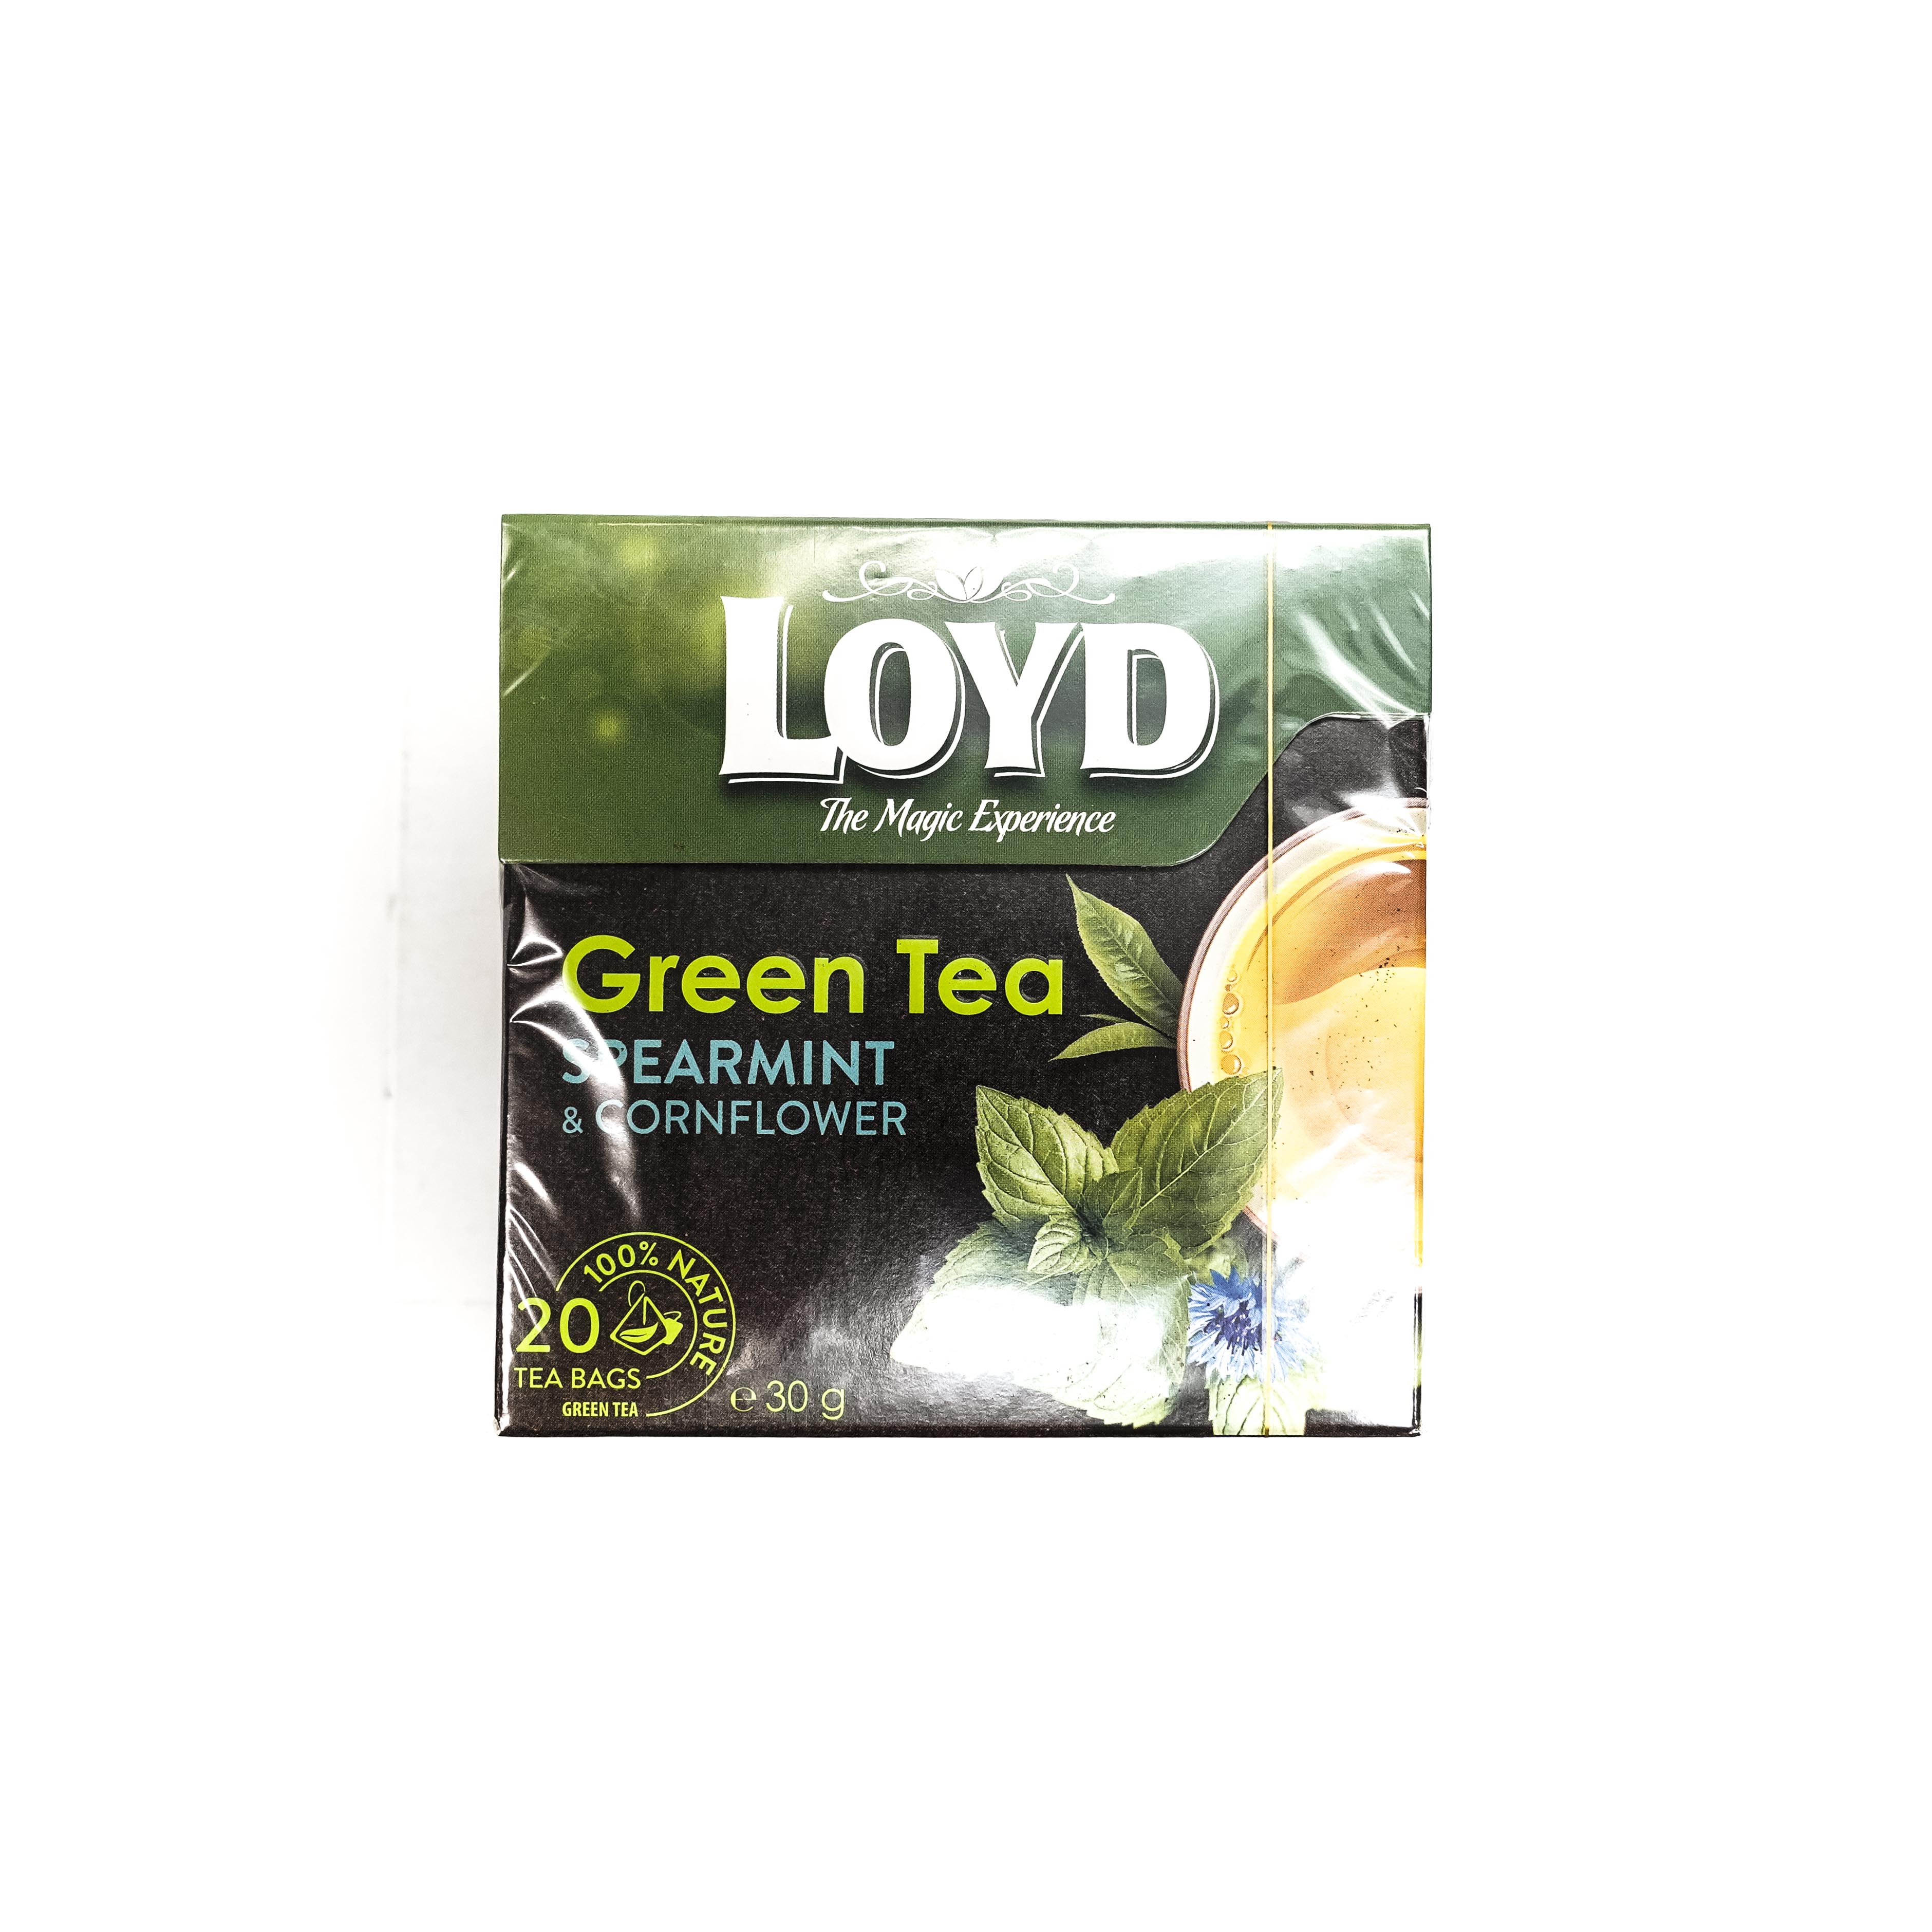 Loyd Green Tea with Spearmint & Cornflower